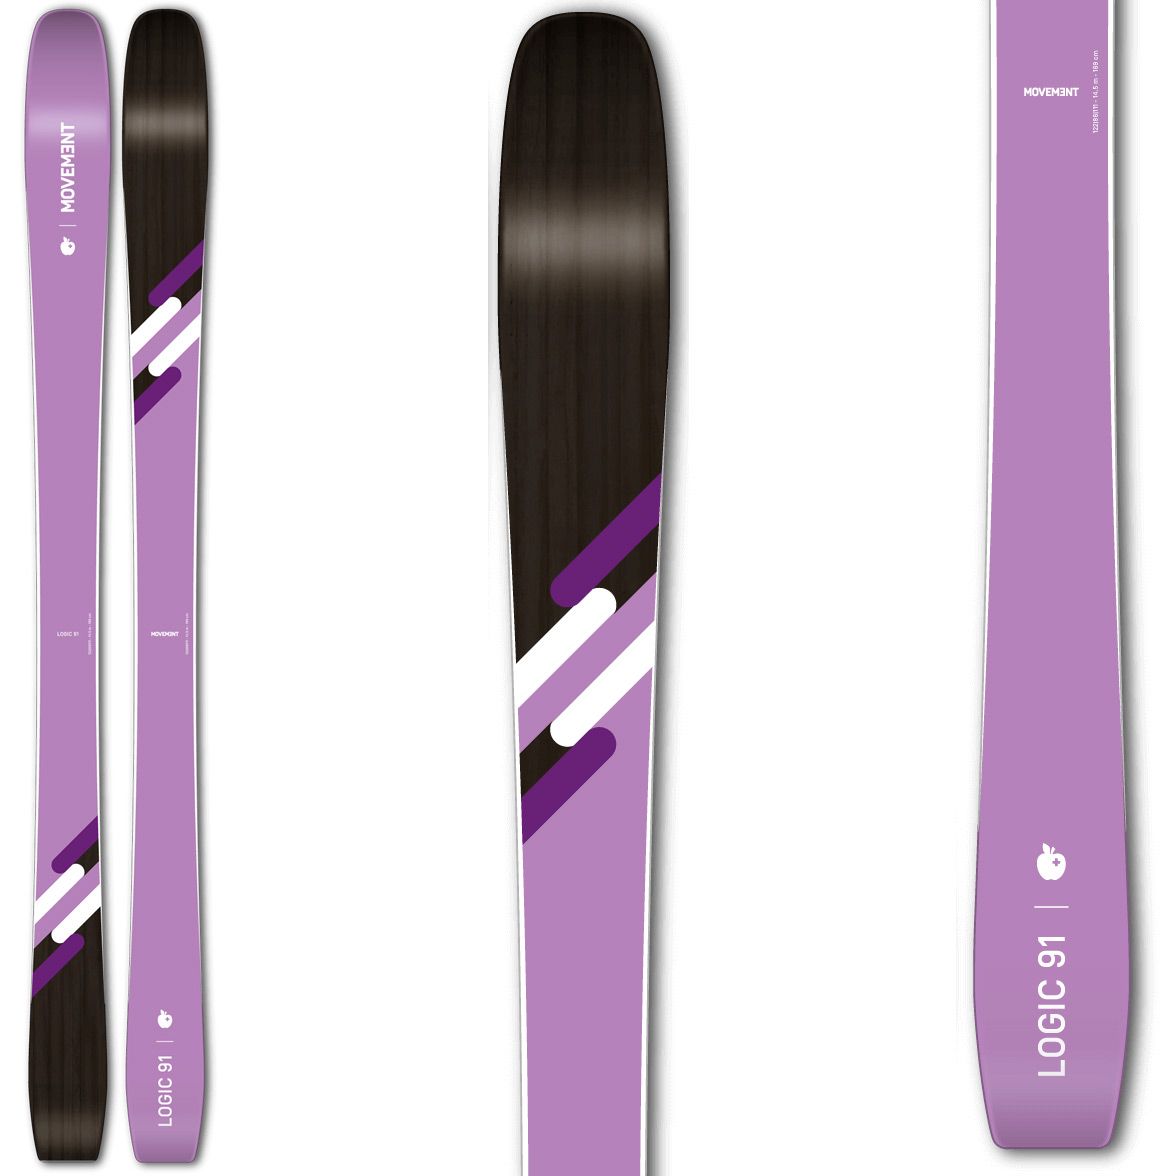 Ski de randonnée Logic 91 Women